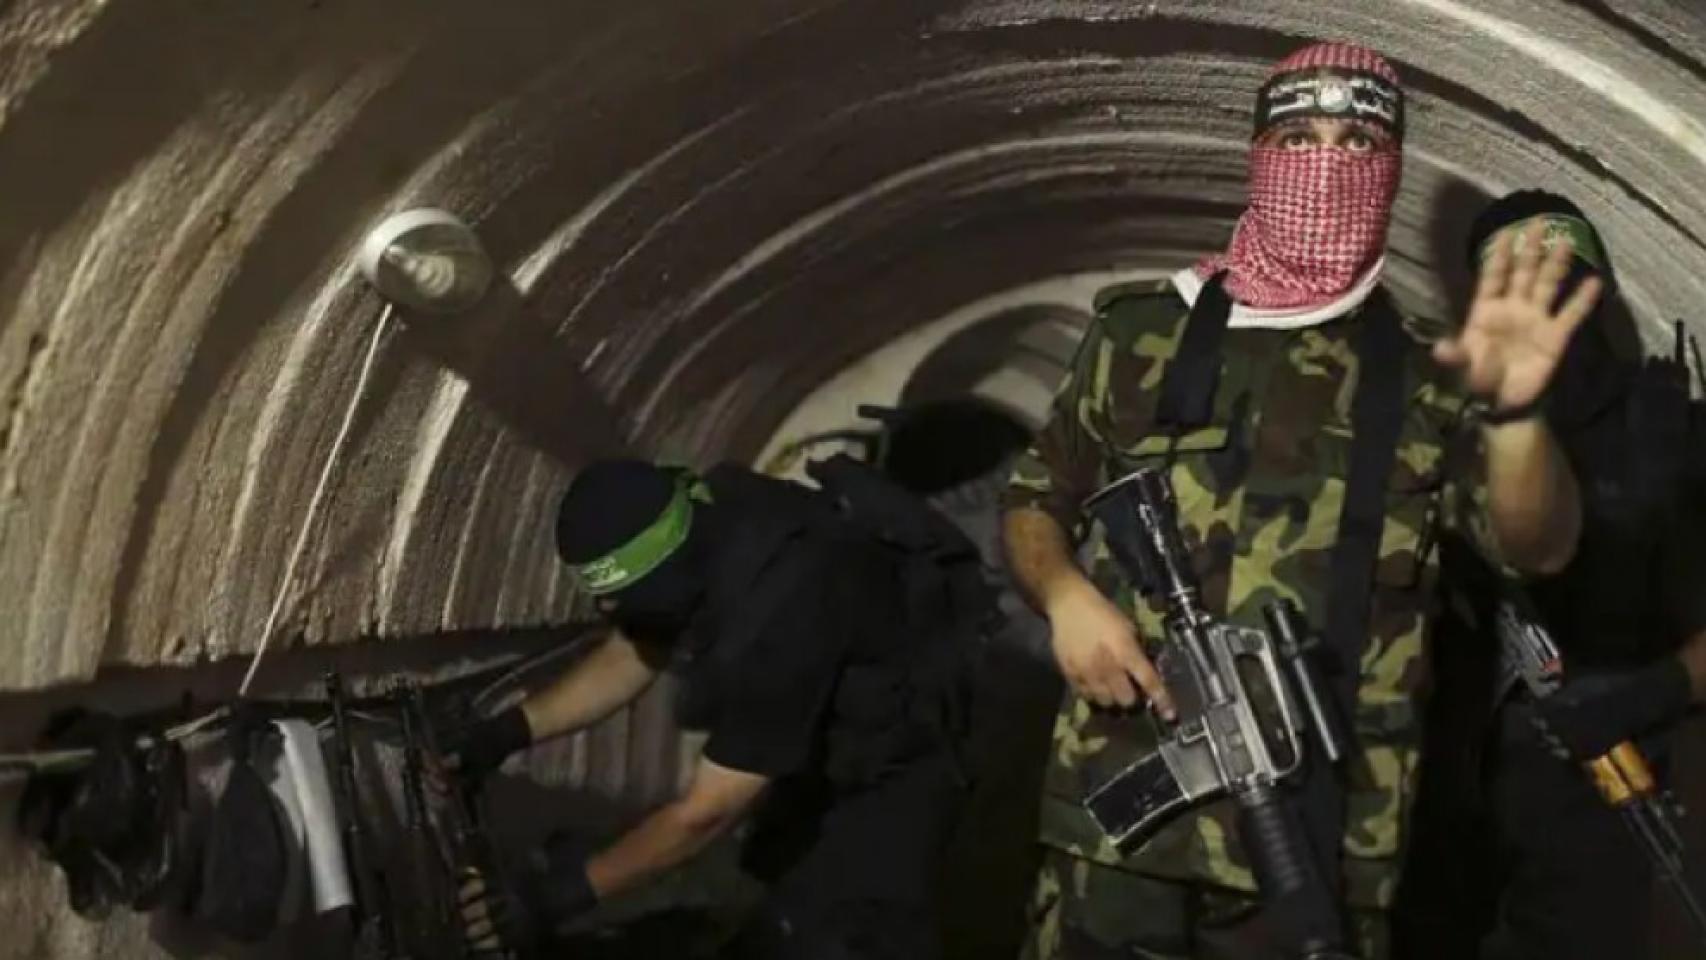 Imagen de Hamás en los túneles de Gaza.